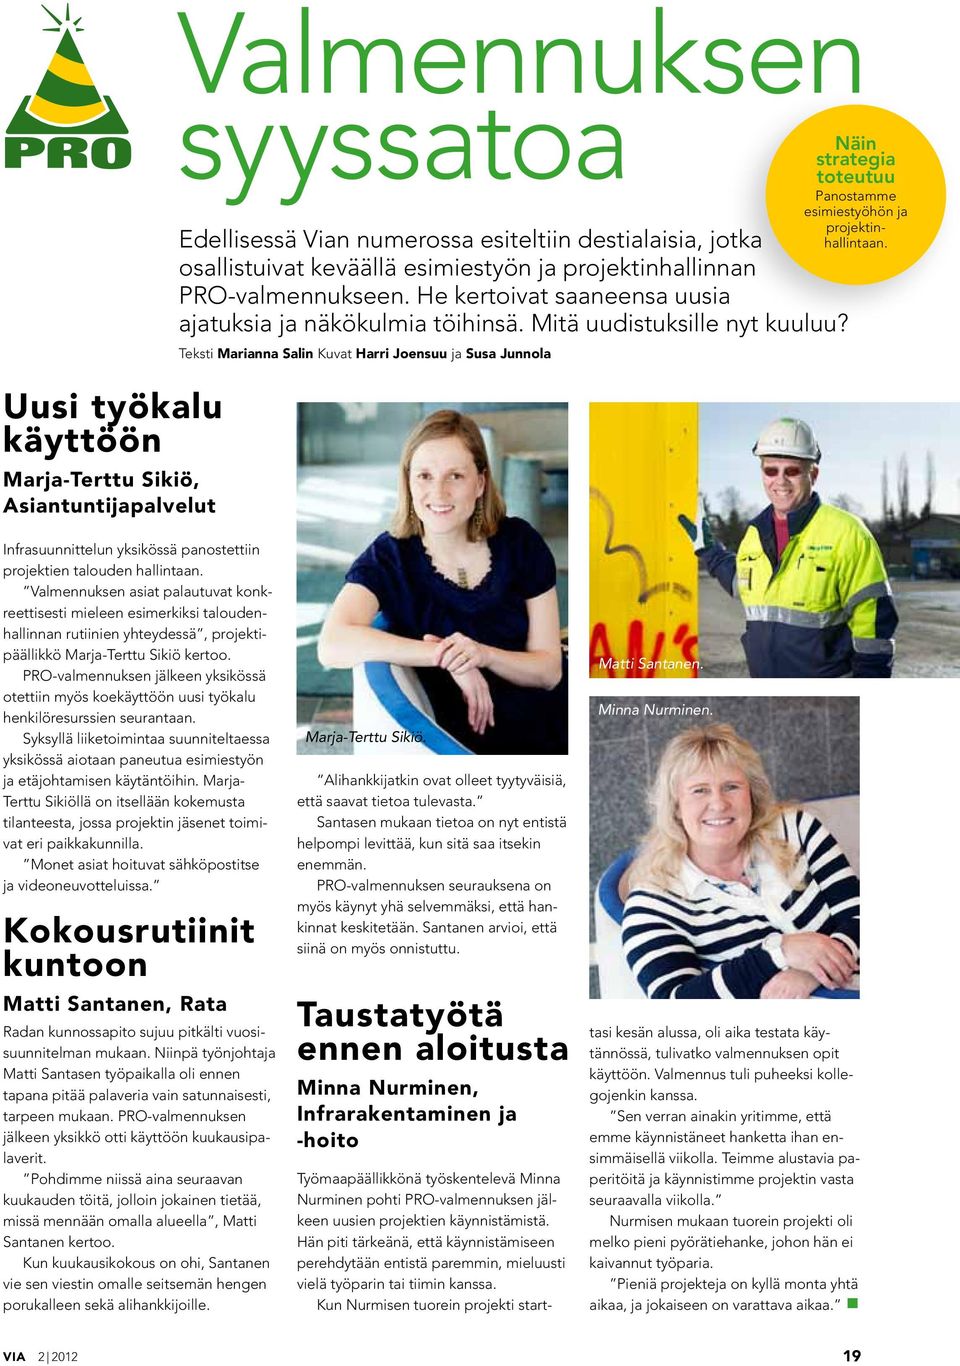 Teksti Marianna Salin Kuvat Harri Joensuu ja Susa Junnola Näin strategia toteutuu Panostamme esimiestyöhön ja projektinhallintaan.